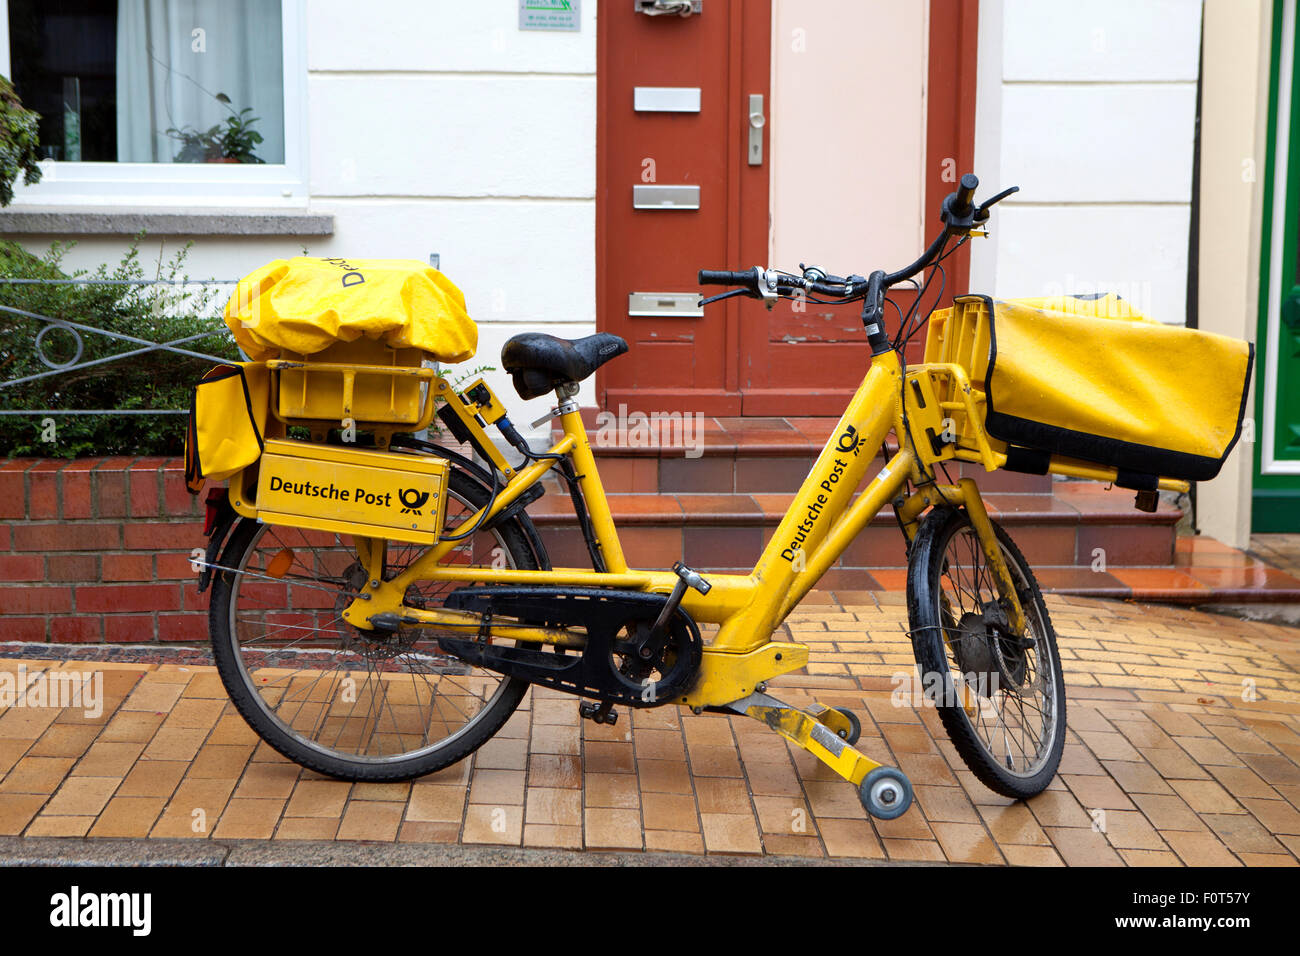 Gelbe Lieferung Fahrrad und Postboten per Deutsche Post